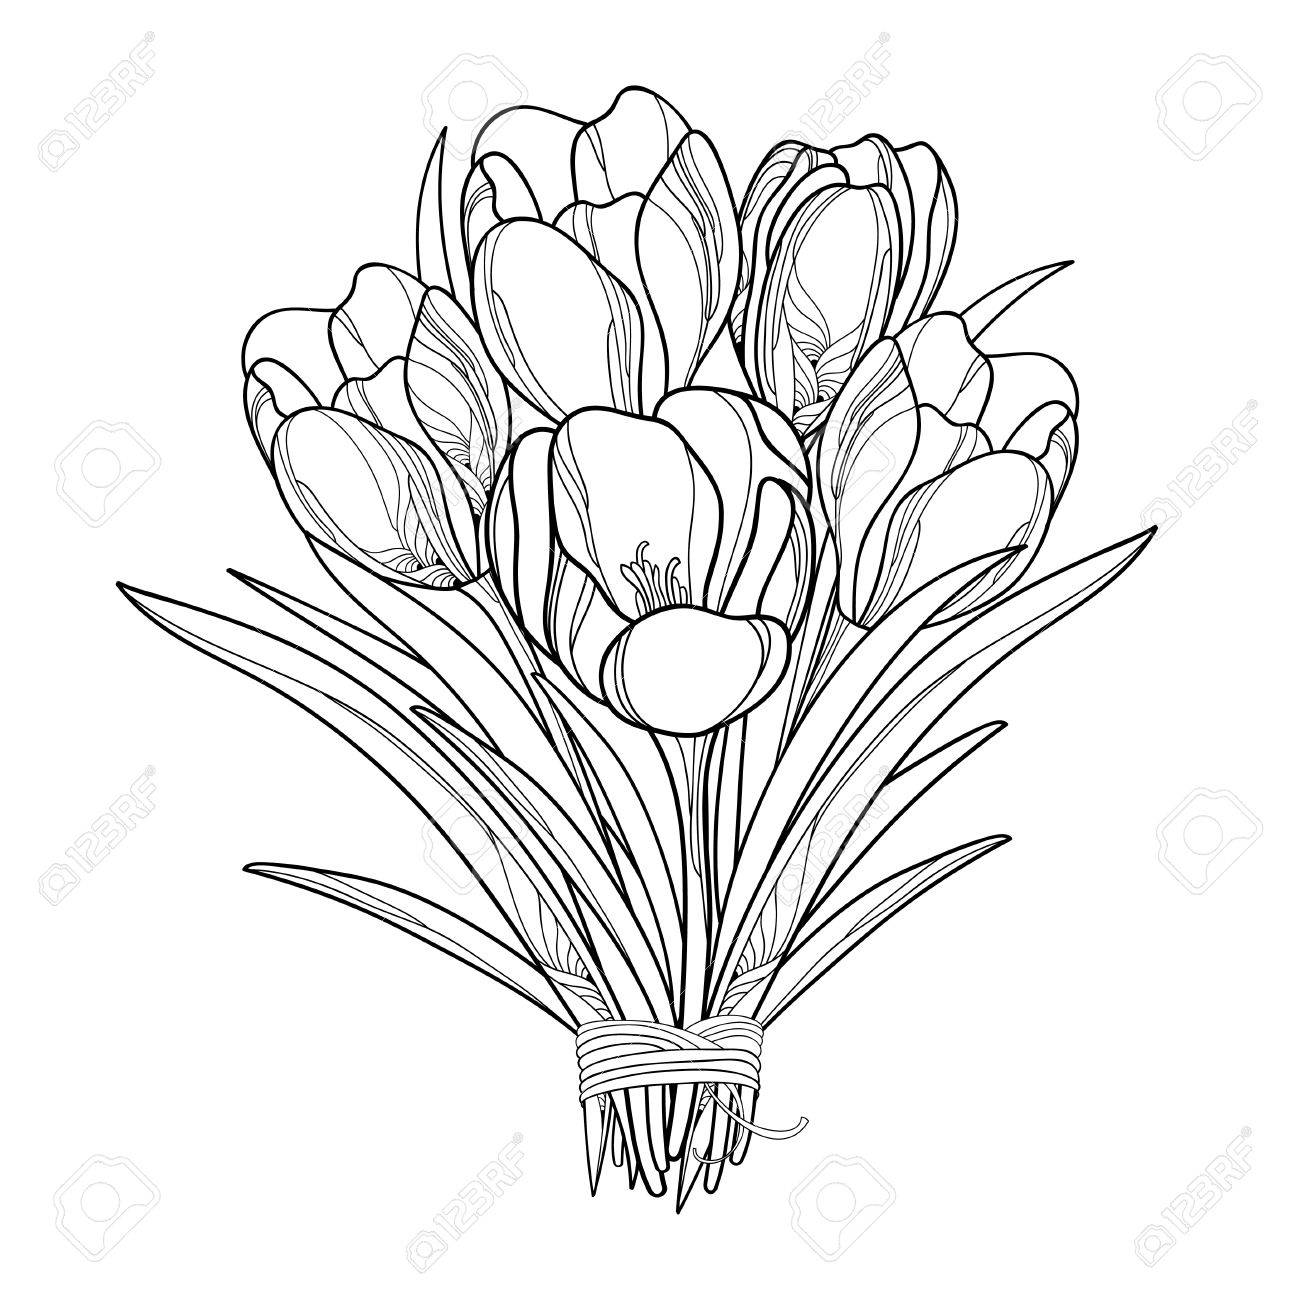 Crocus Flower Drawing at GetDrawings | Free download